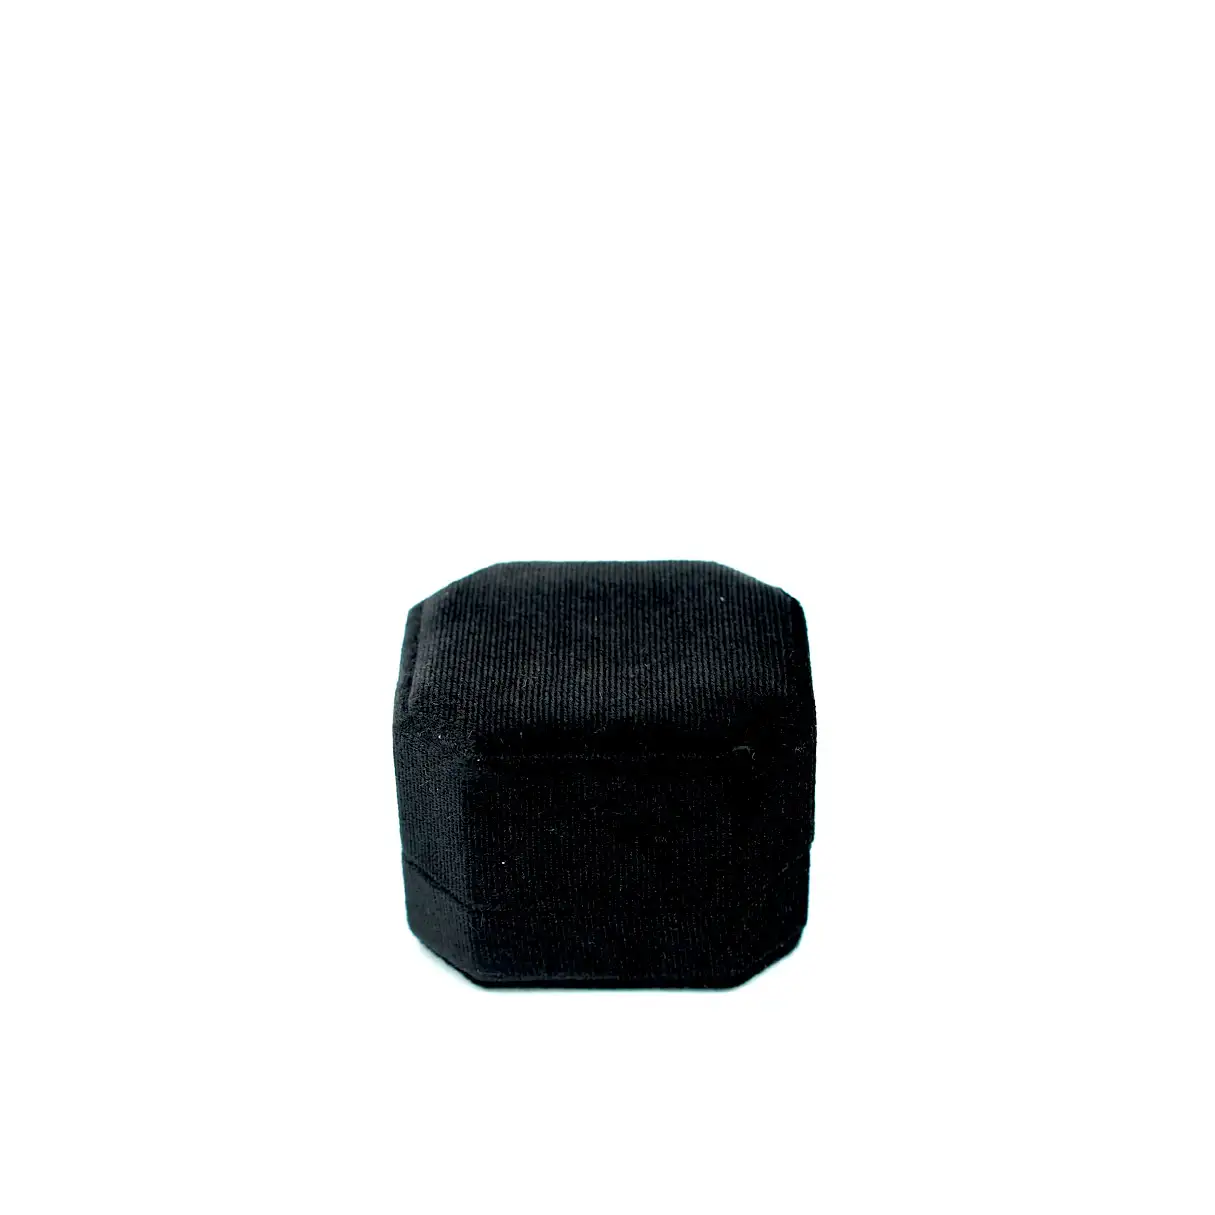 Vikki Ring Box in Black